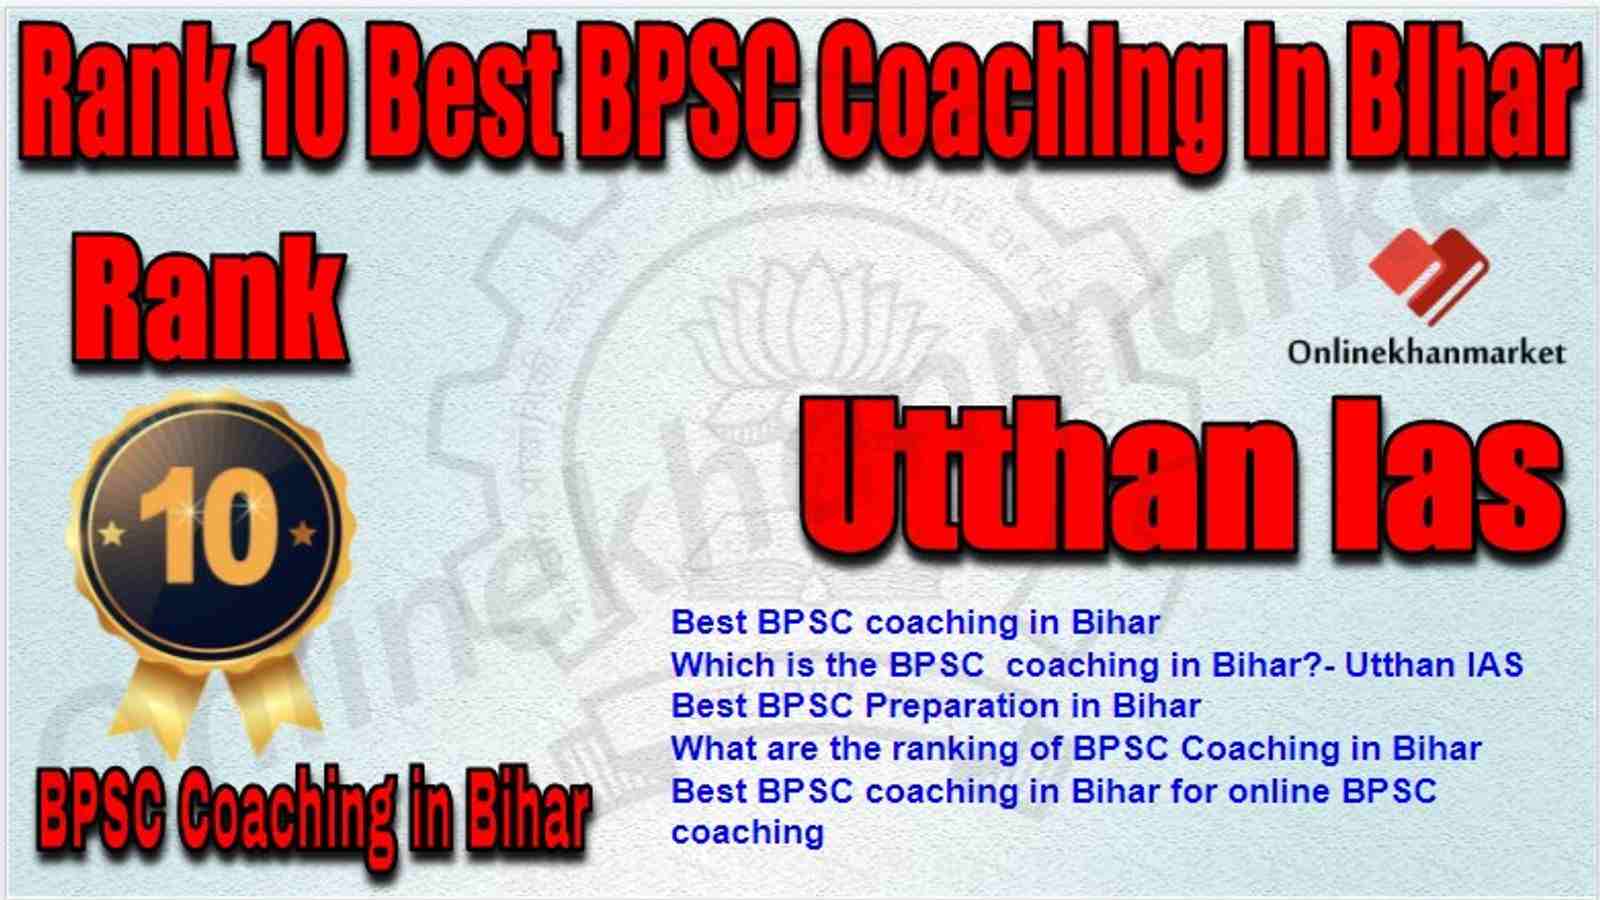 Rank 10 Best BPSC Coaching in bihar